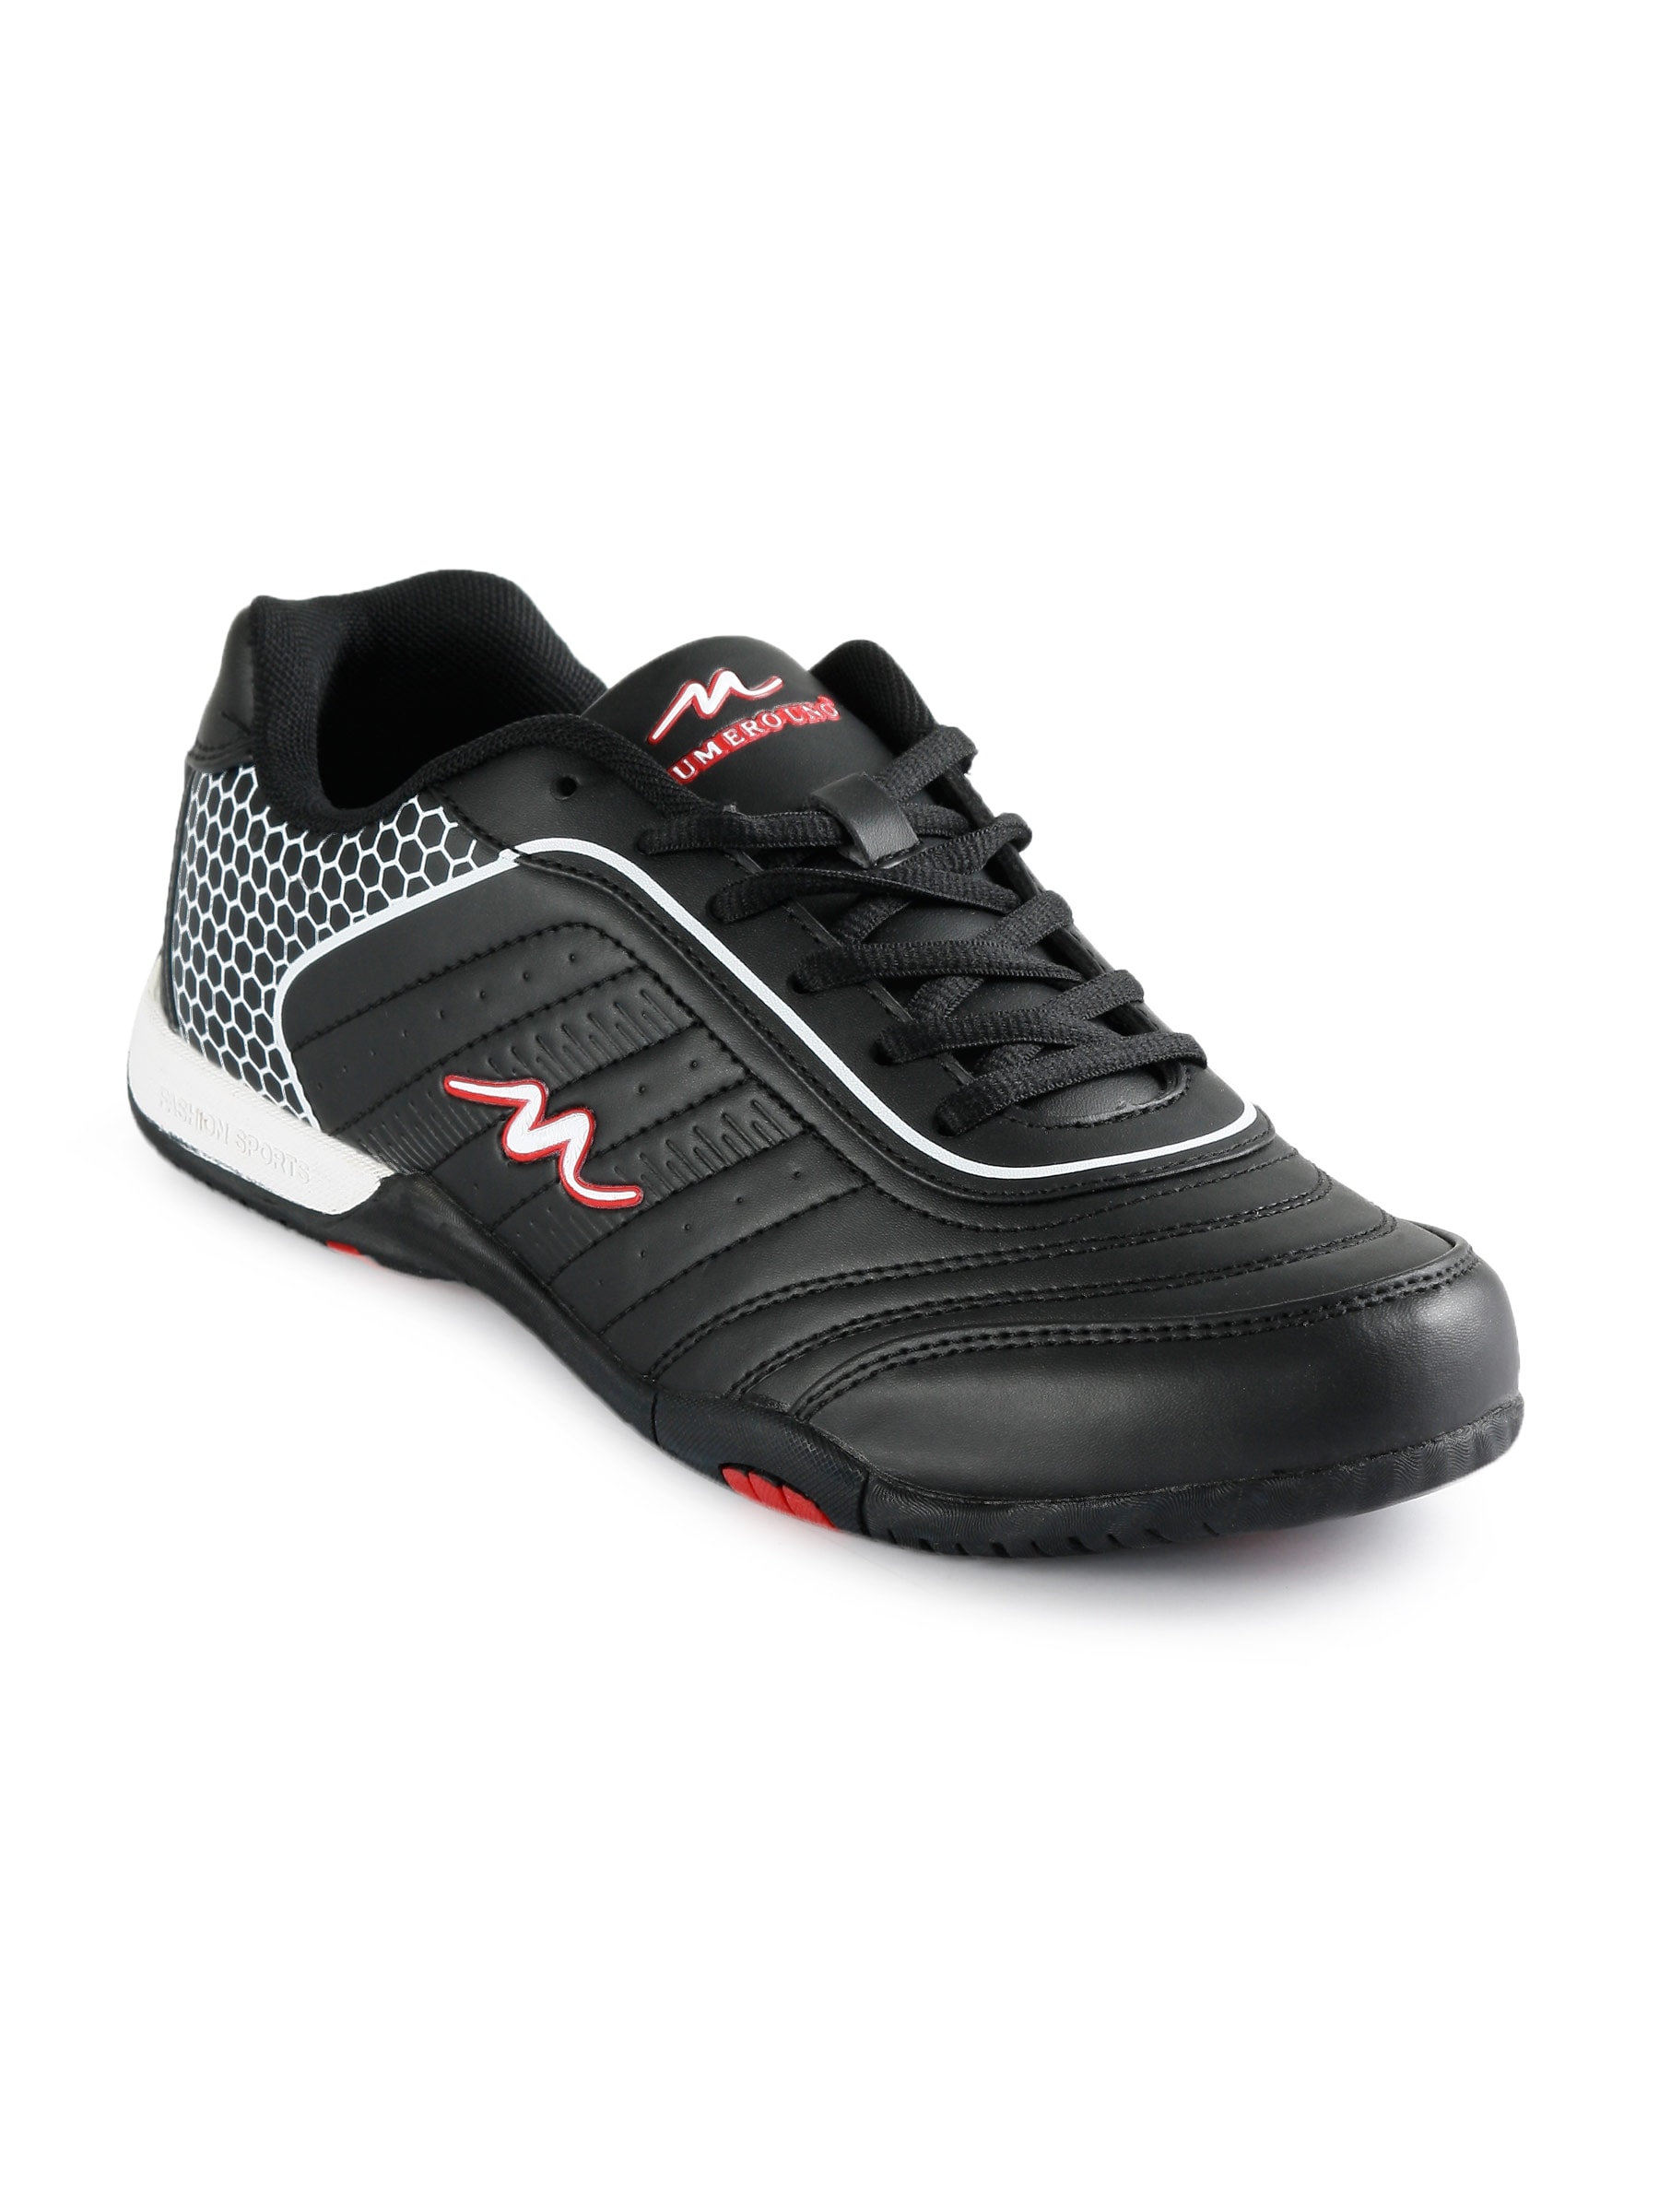 Numero Uno Men Fashion Black Sports Shoes